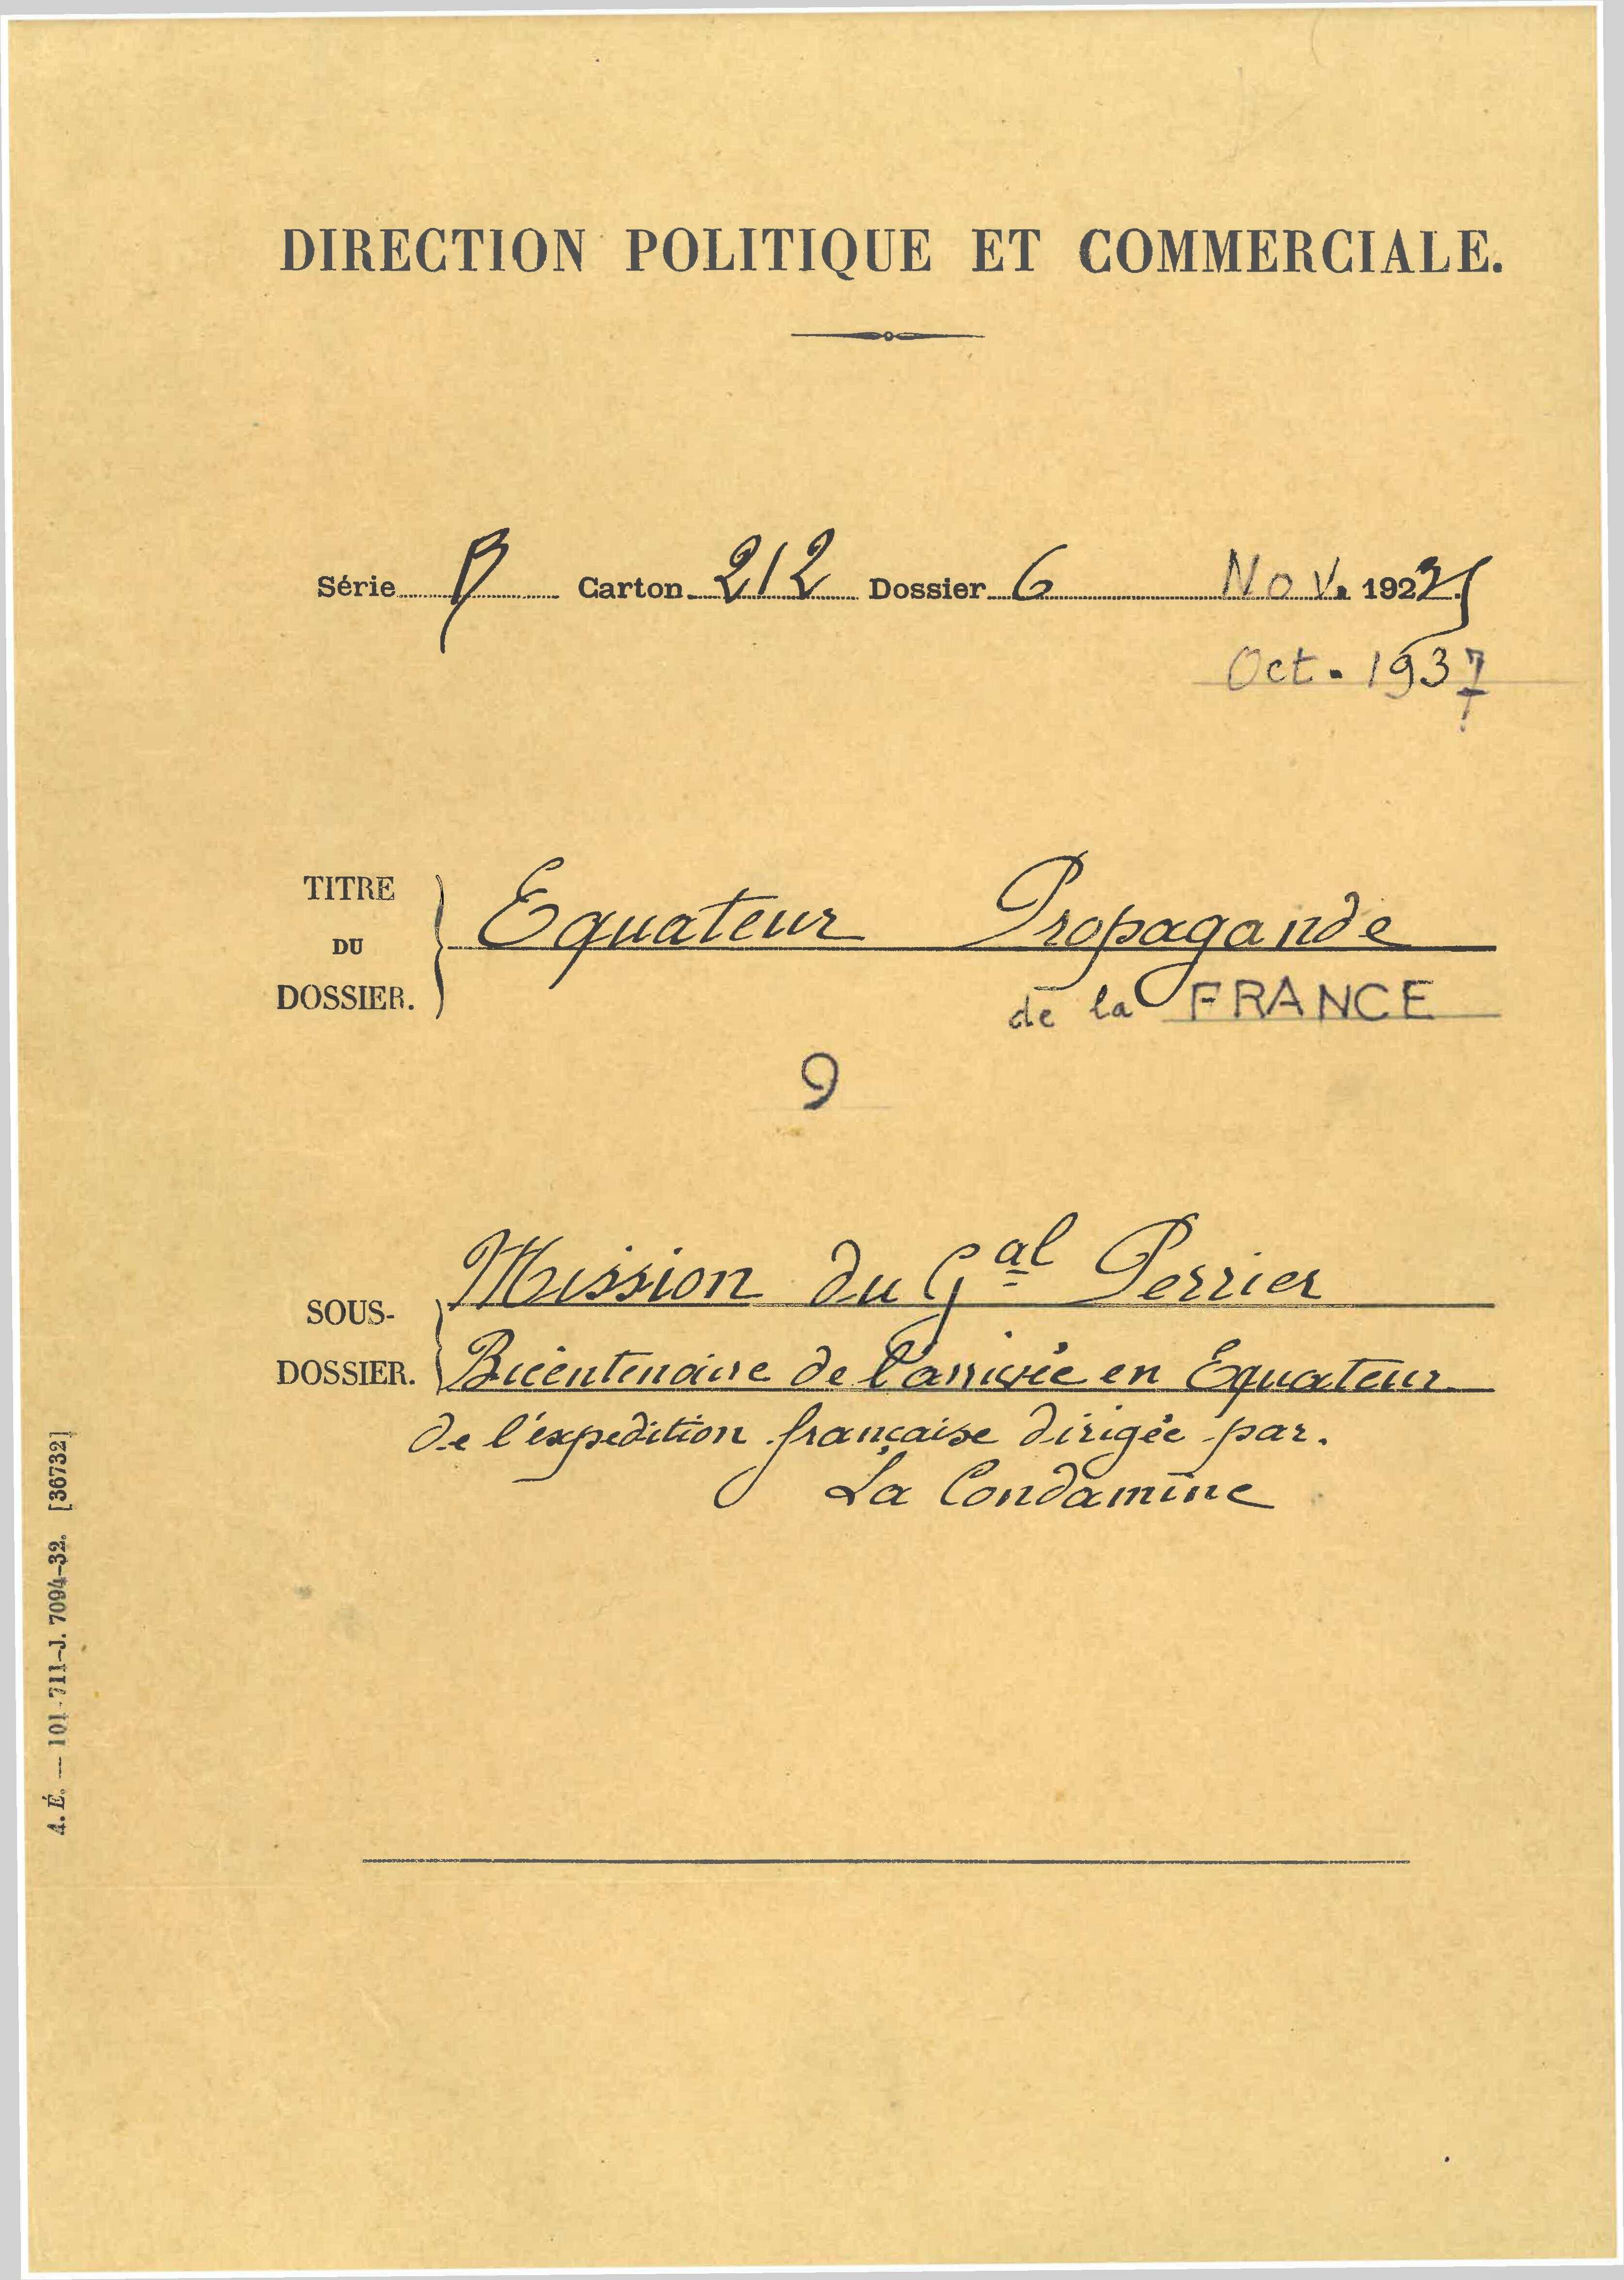 Mission du général Perrier ; bicentenaire de l'arrivée de La Condamine